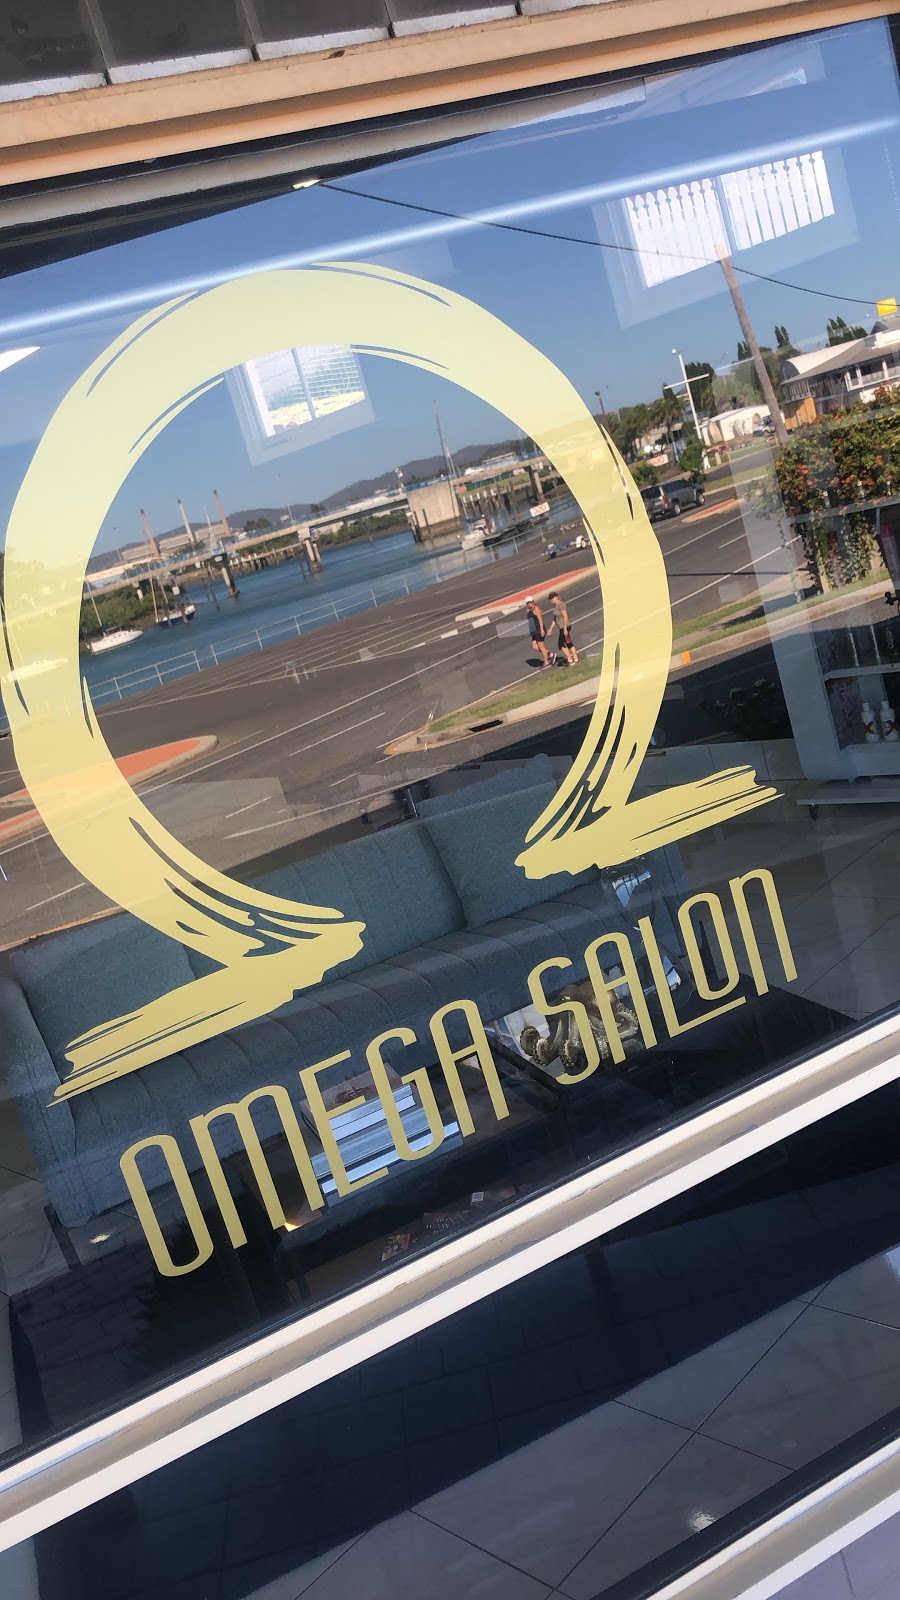 Omega Salon | hair care | 2 Oaka Ln, Gladstone Central QLD 4680, Australia | 0400047758 OR +61 400 047 758